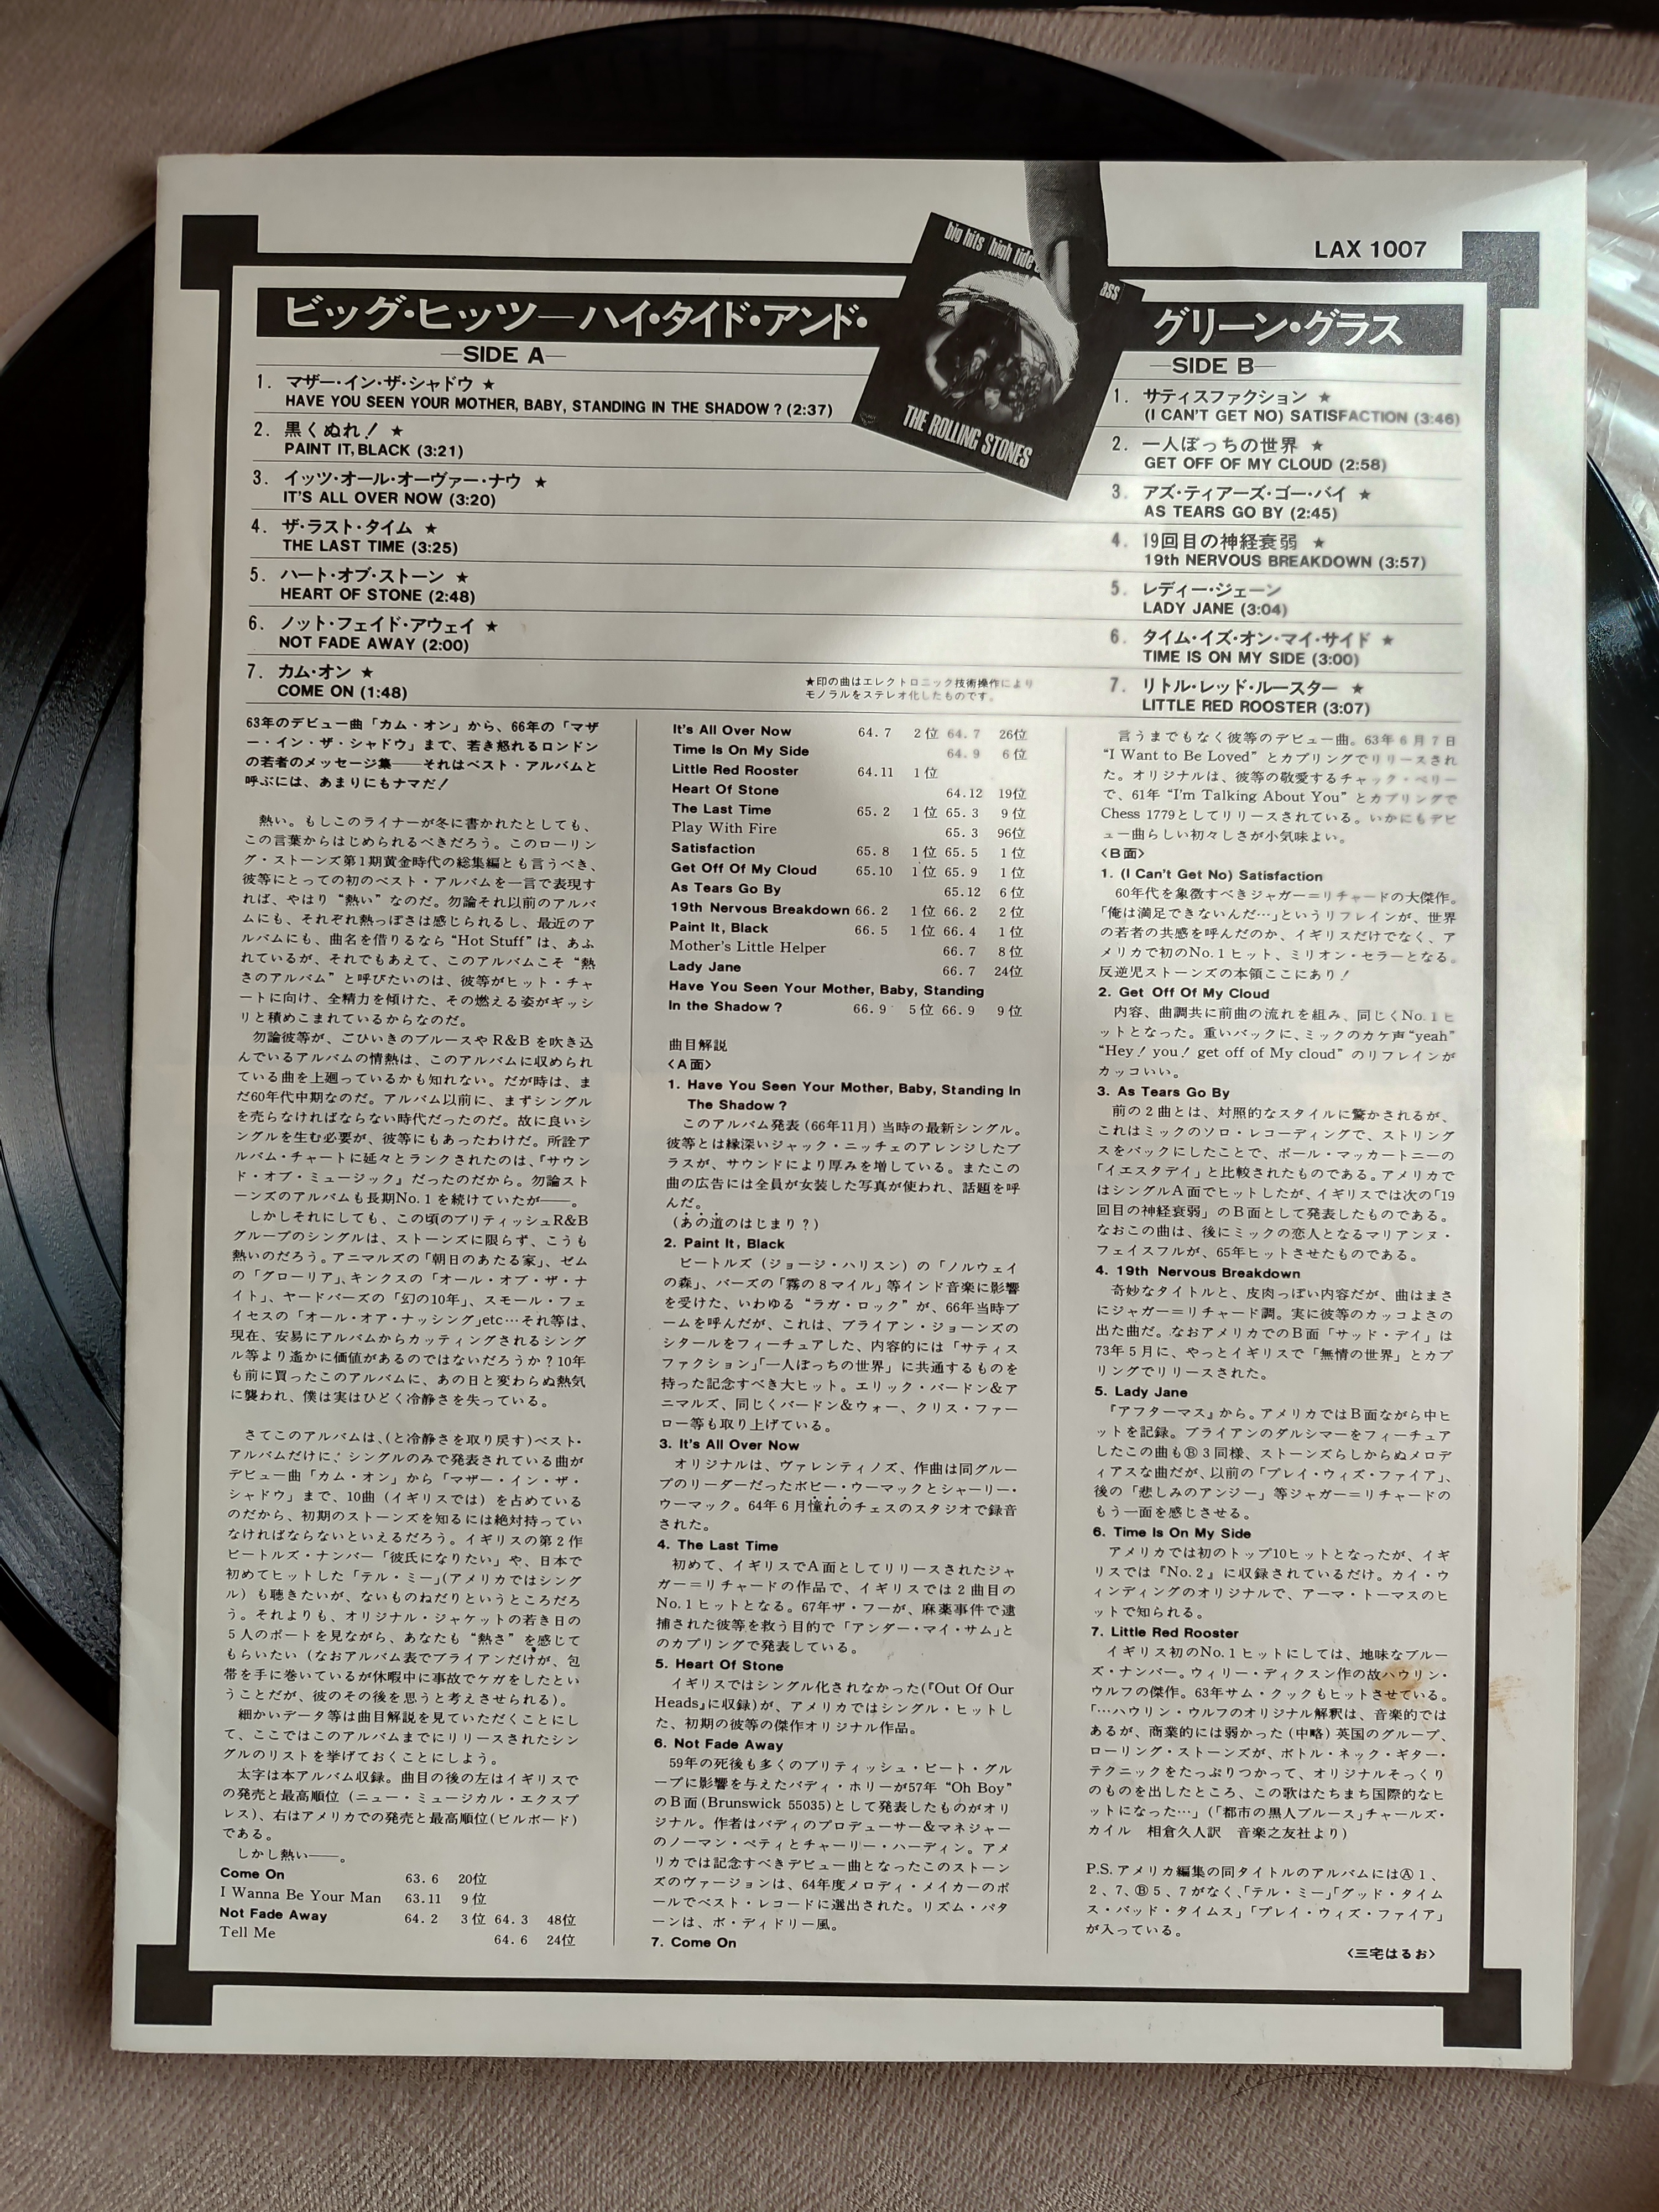 ROLLING STONES  - Big Hits (High Tide And Green Grass) - 1981 Japonya Basım -LP Plak Albüm - 2. EL